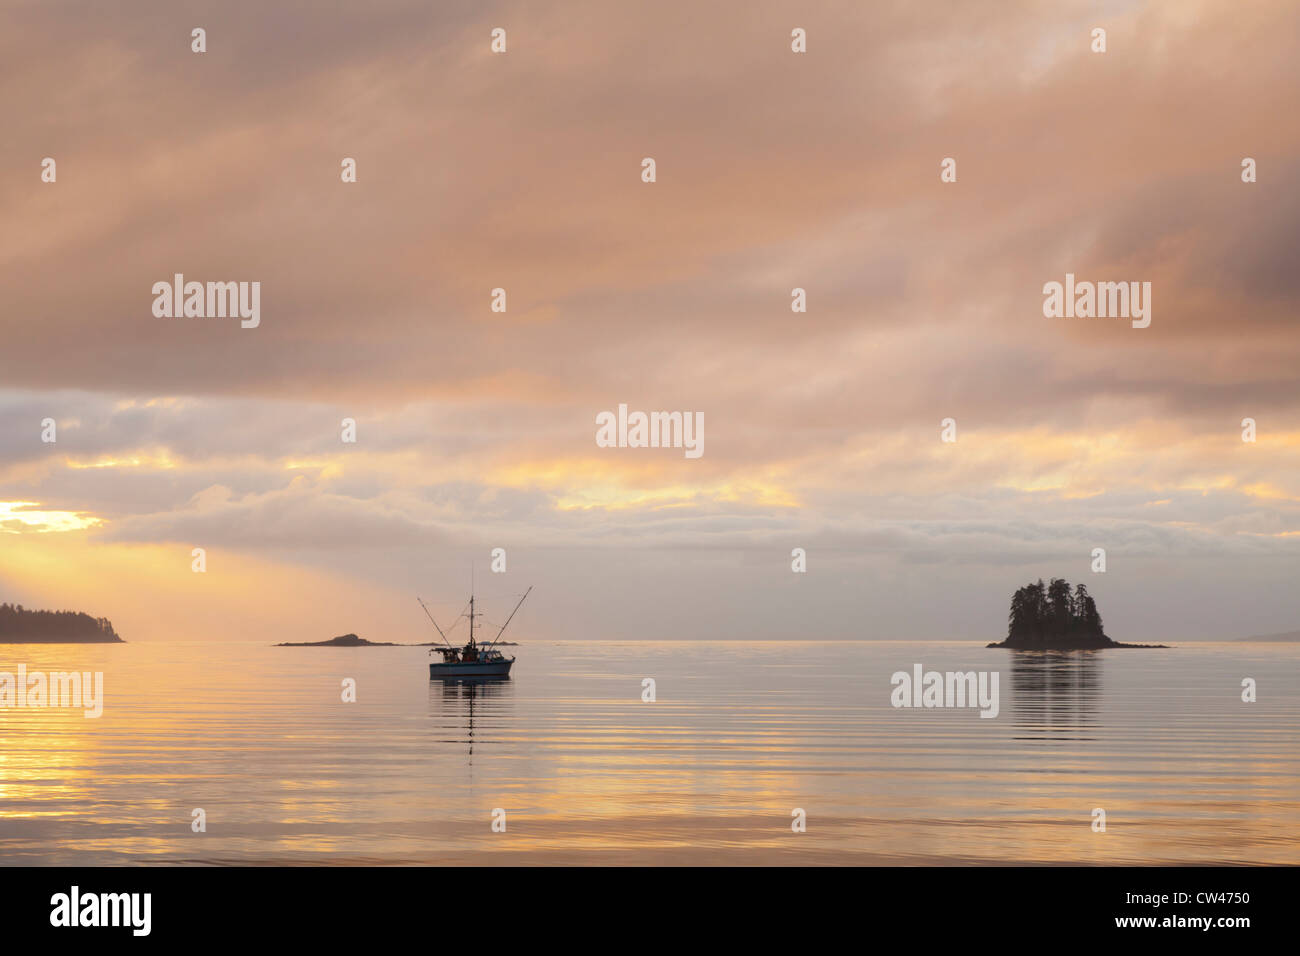 Stati Uniti d'America, Alaska, Inian isole, la pesca in barca al tramonto Foto Stock